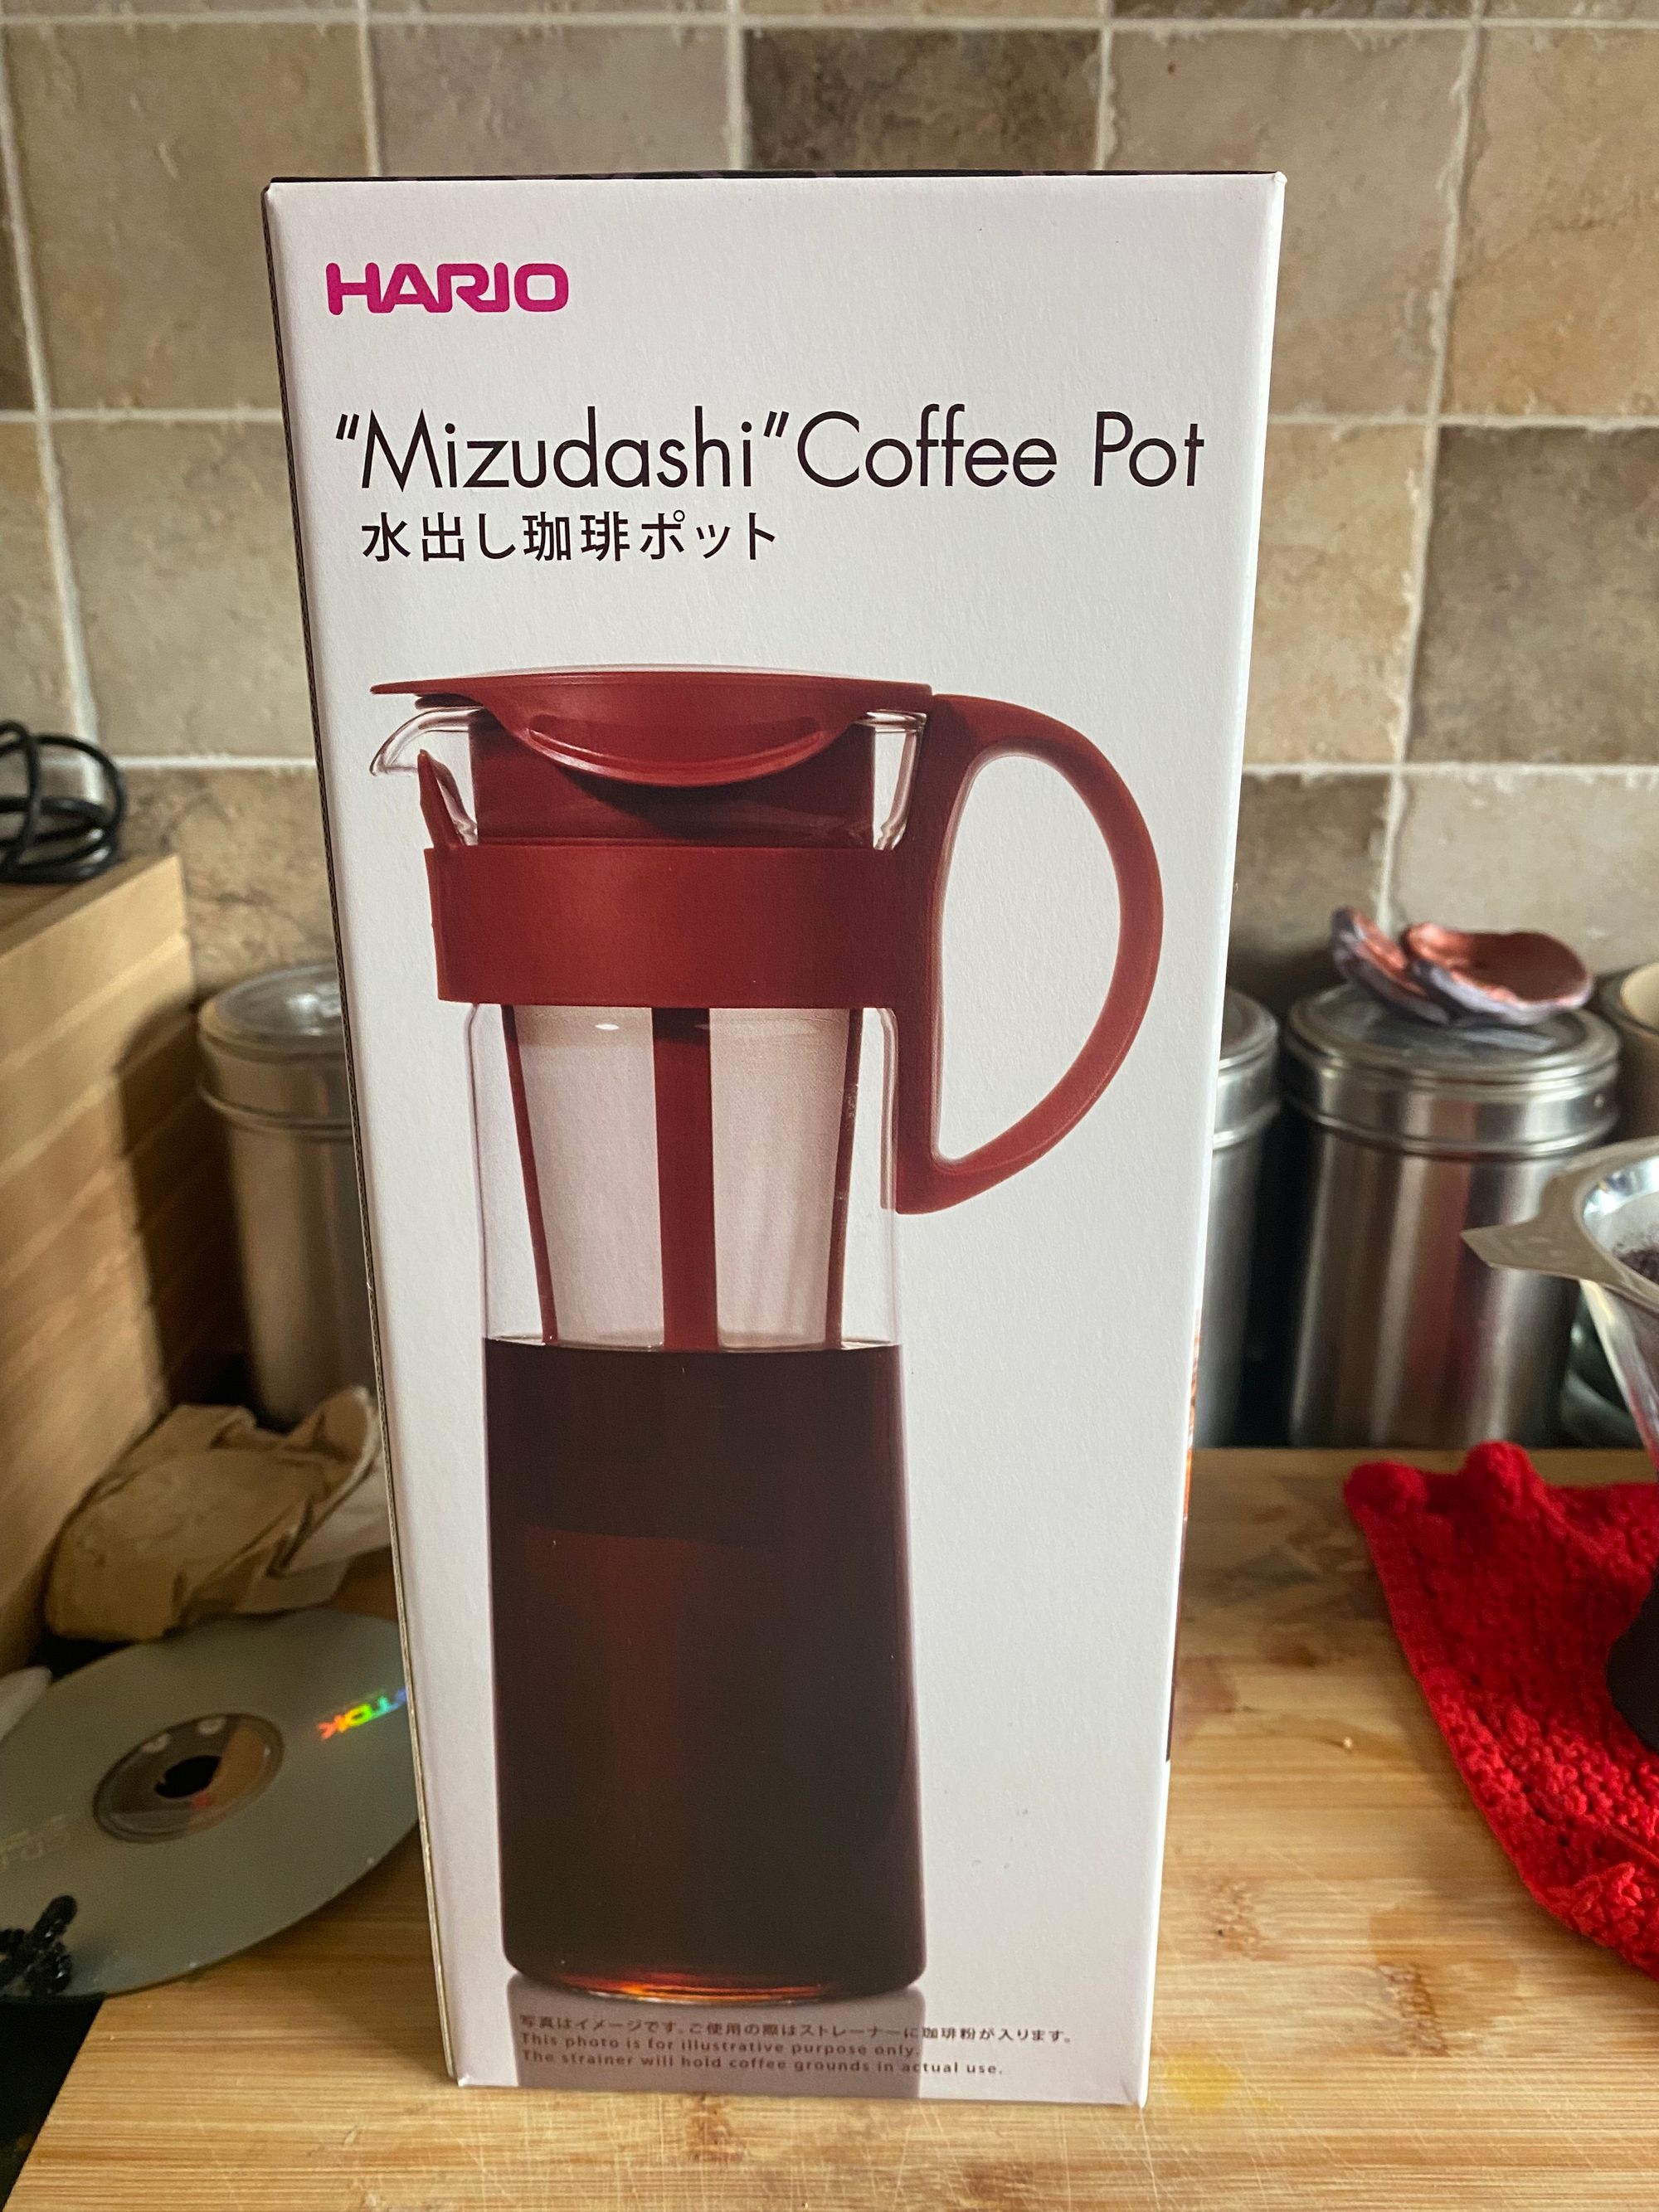 Box containing a "Mizudashi" Coffee Pot